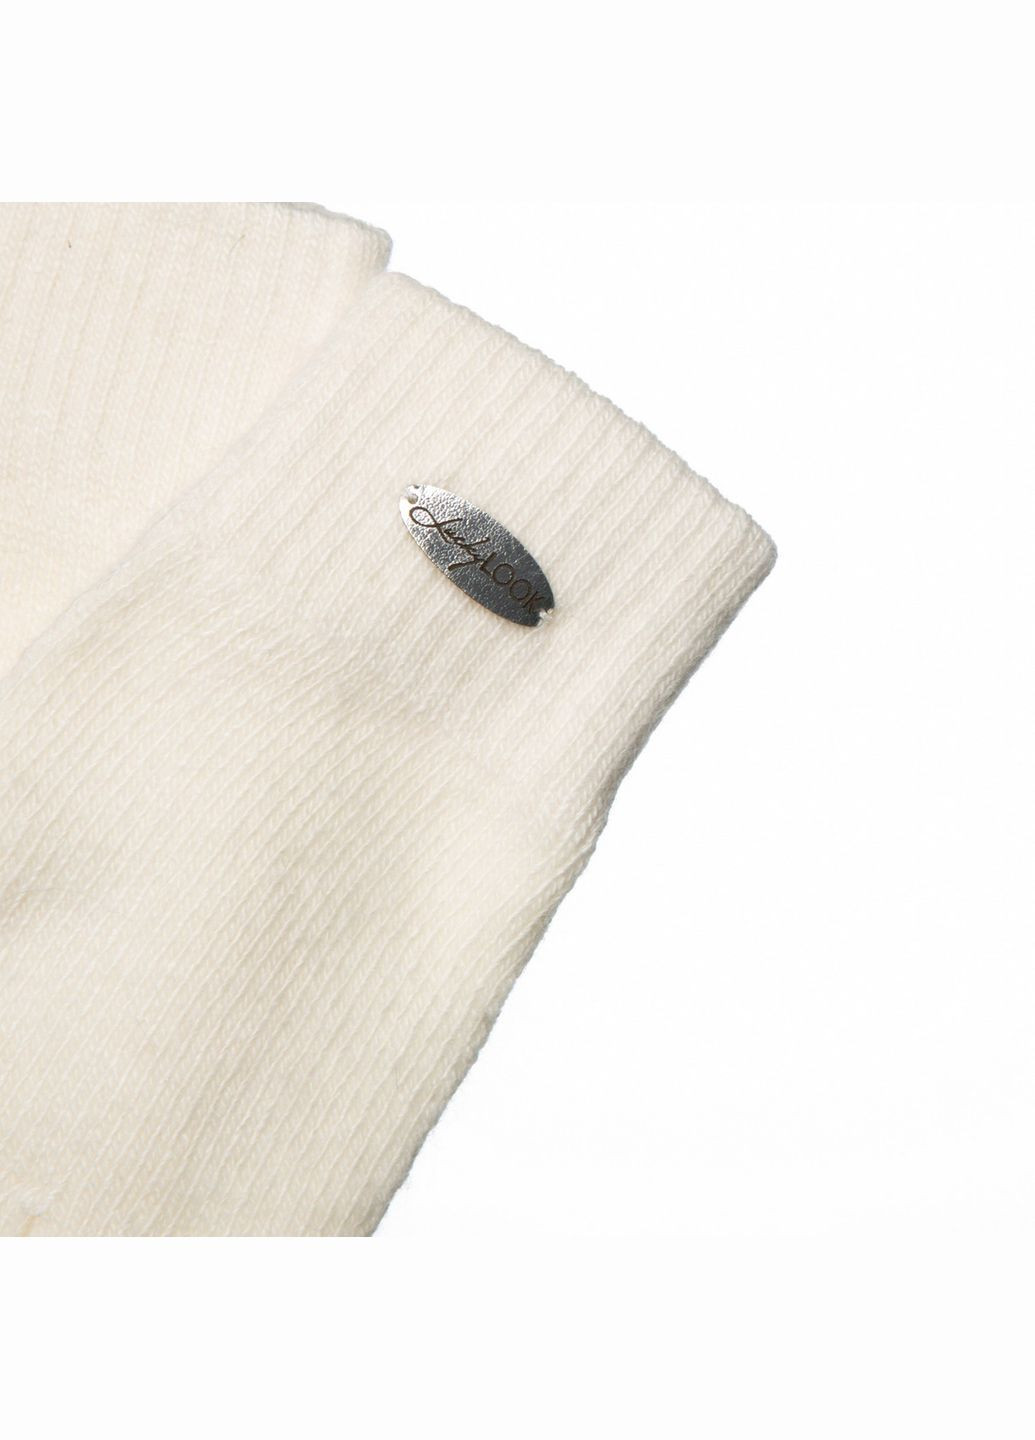 Перчатки женские шерсть белые JUTTA LuckyLOOK 974-243 (290278280)